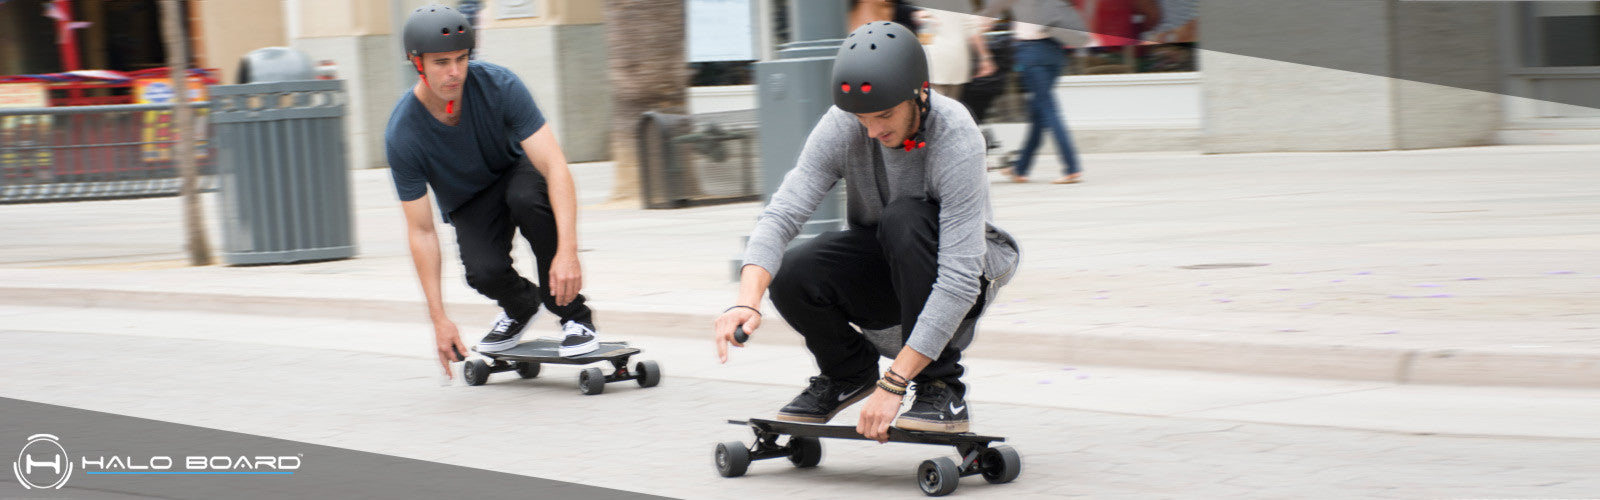 Halo Board electric skateboard cruising Santa Monica 2017